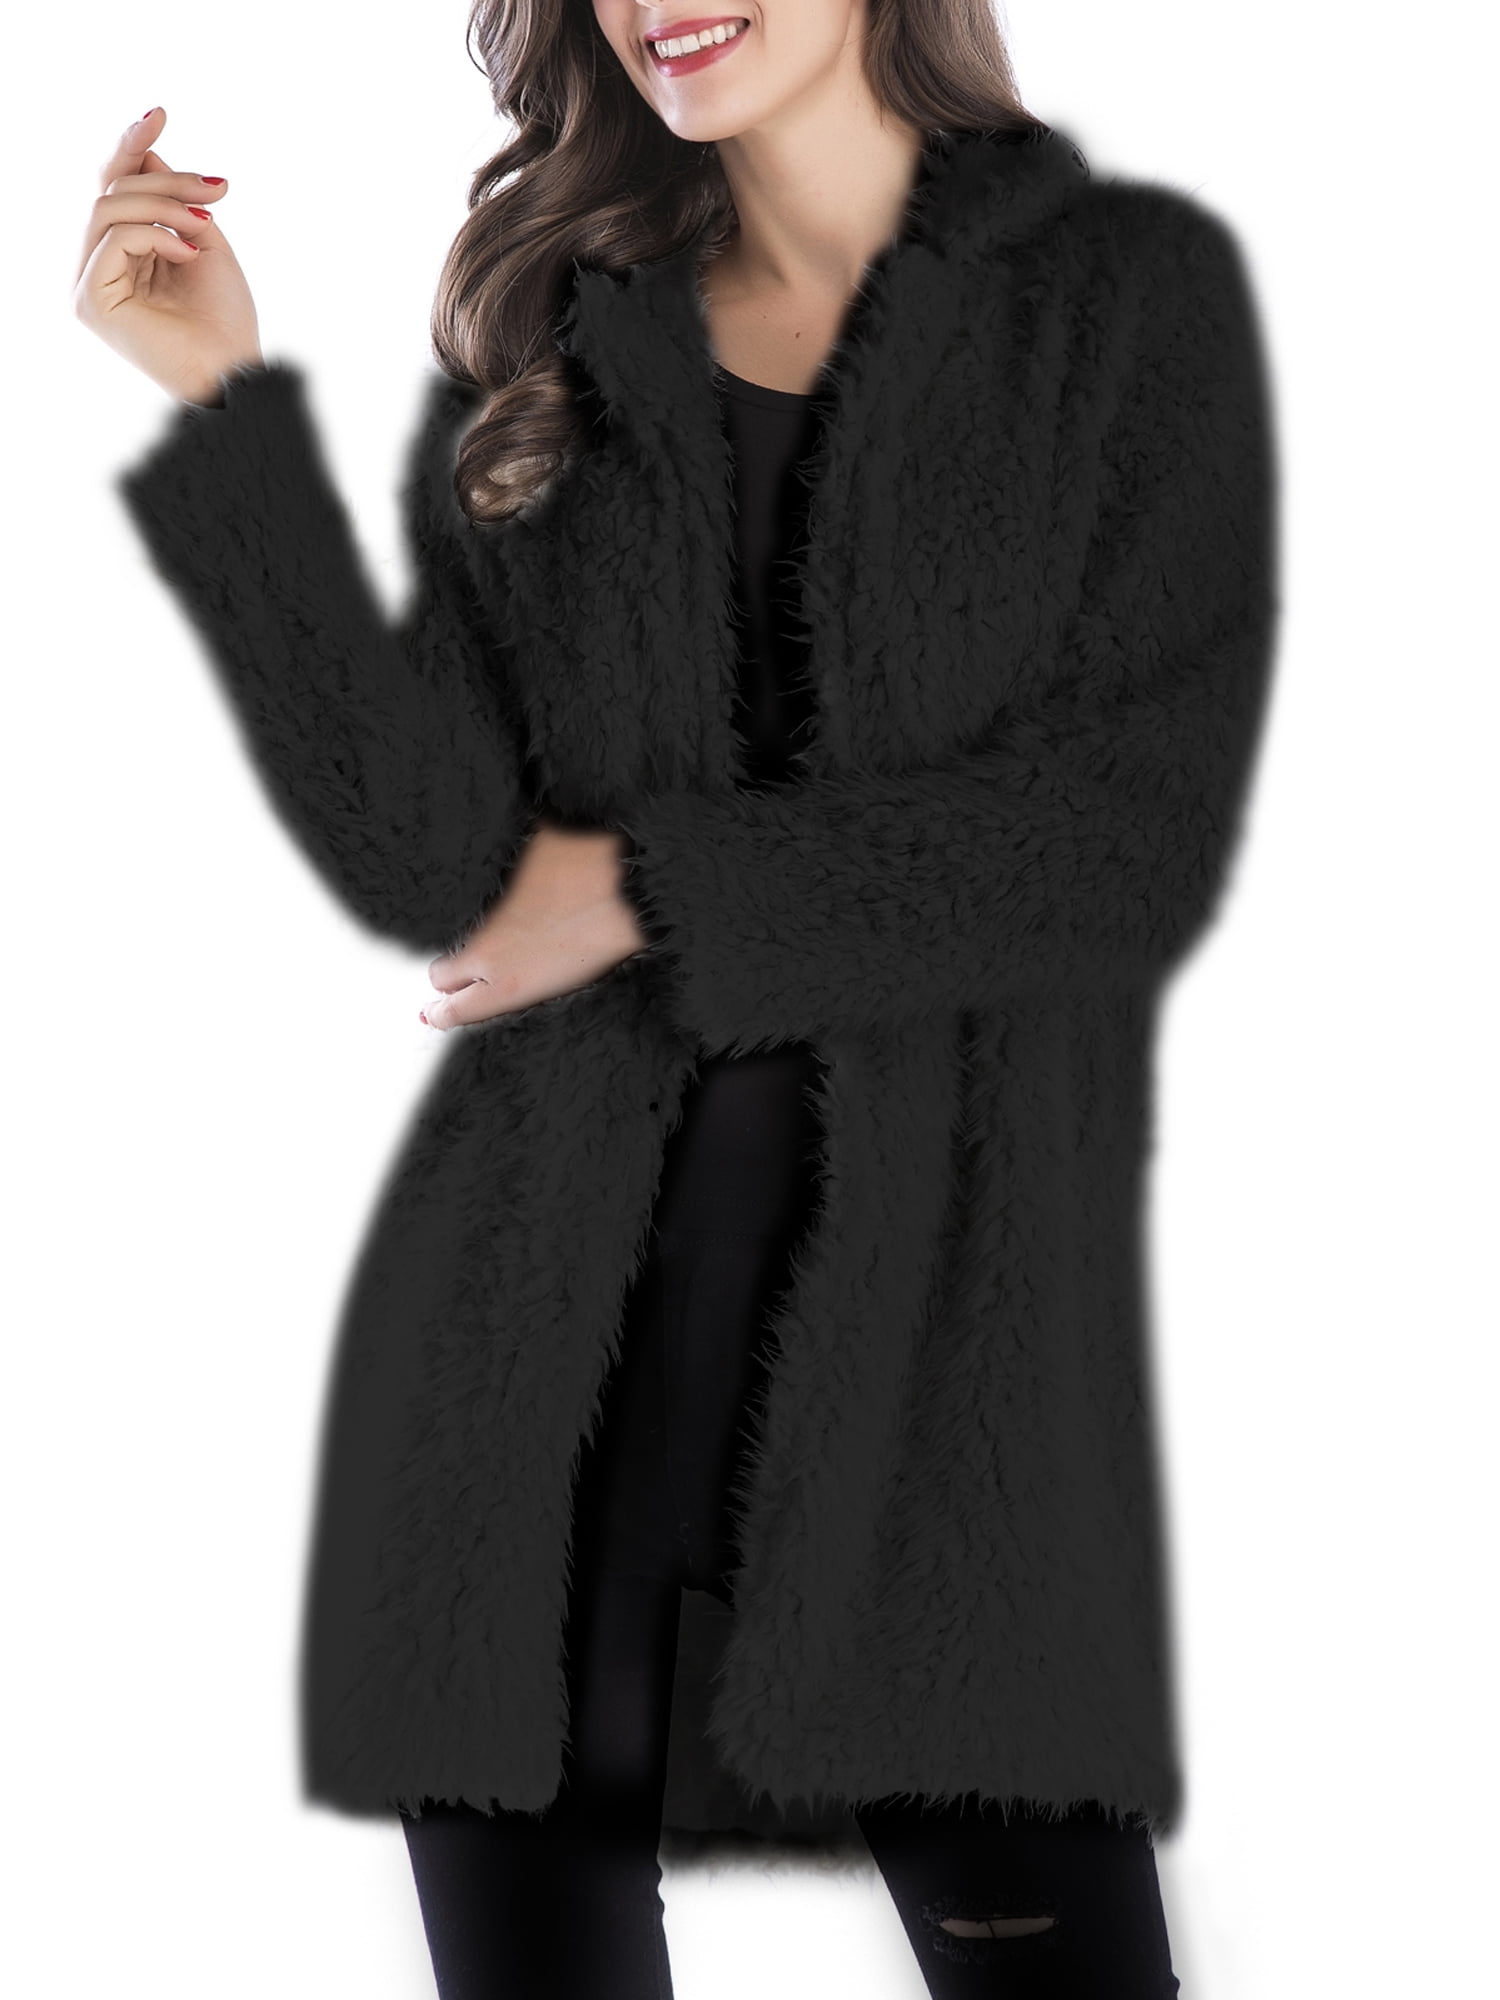 Womens Faux Fur Warm Winter Outwear Jackets Zipper Lapel Fuzzy Fleece Lapel Open Front Long Cardigan Coat 